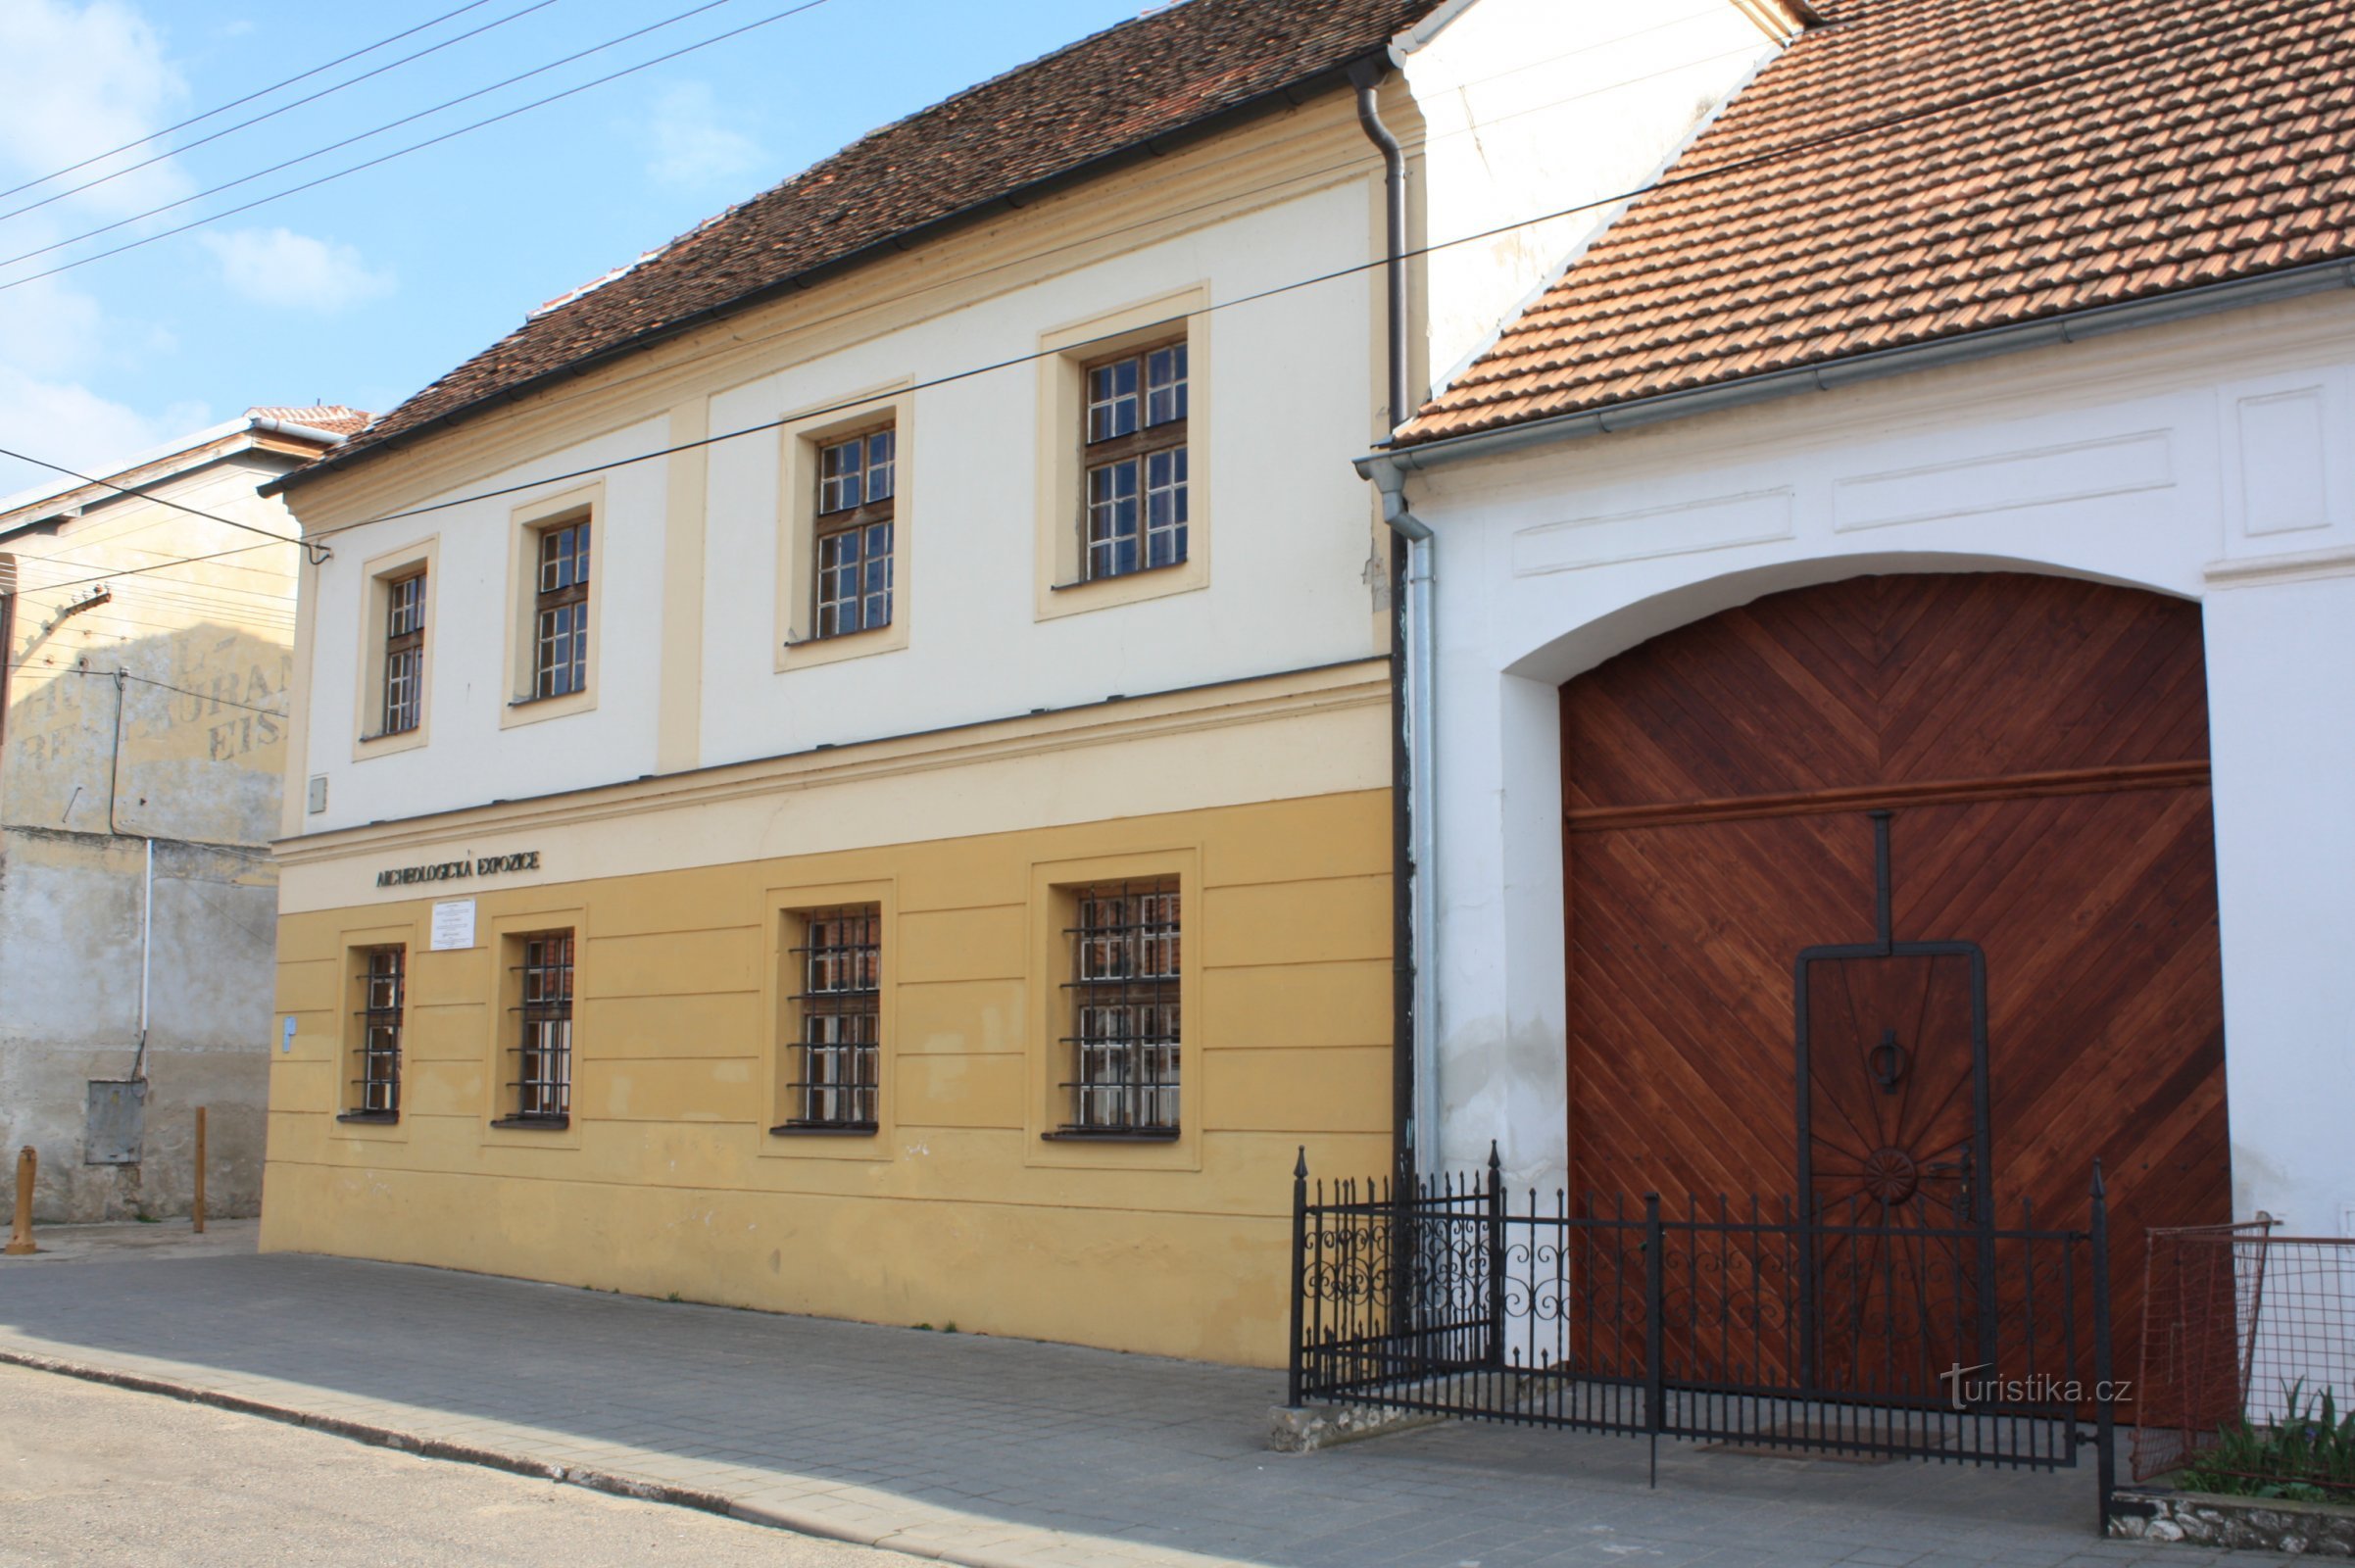 Archeologische expositie in Dolní Věstonice